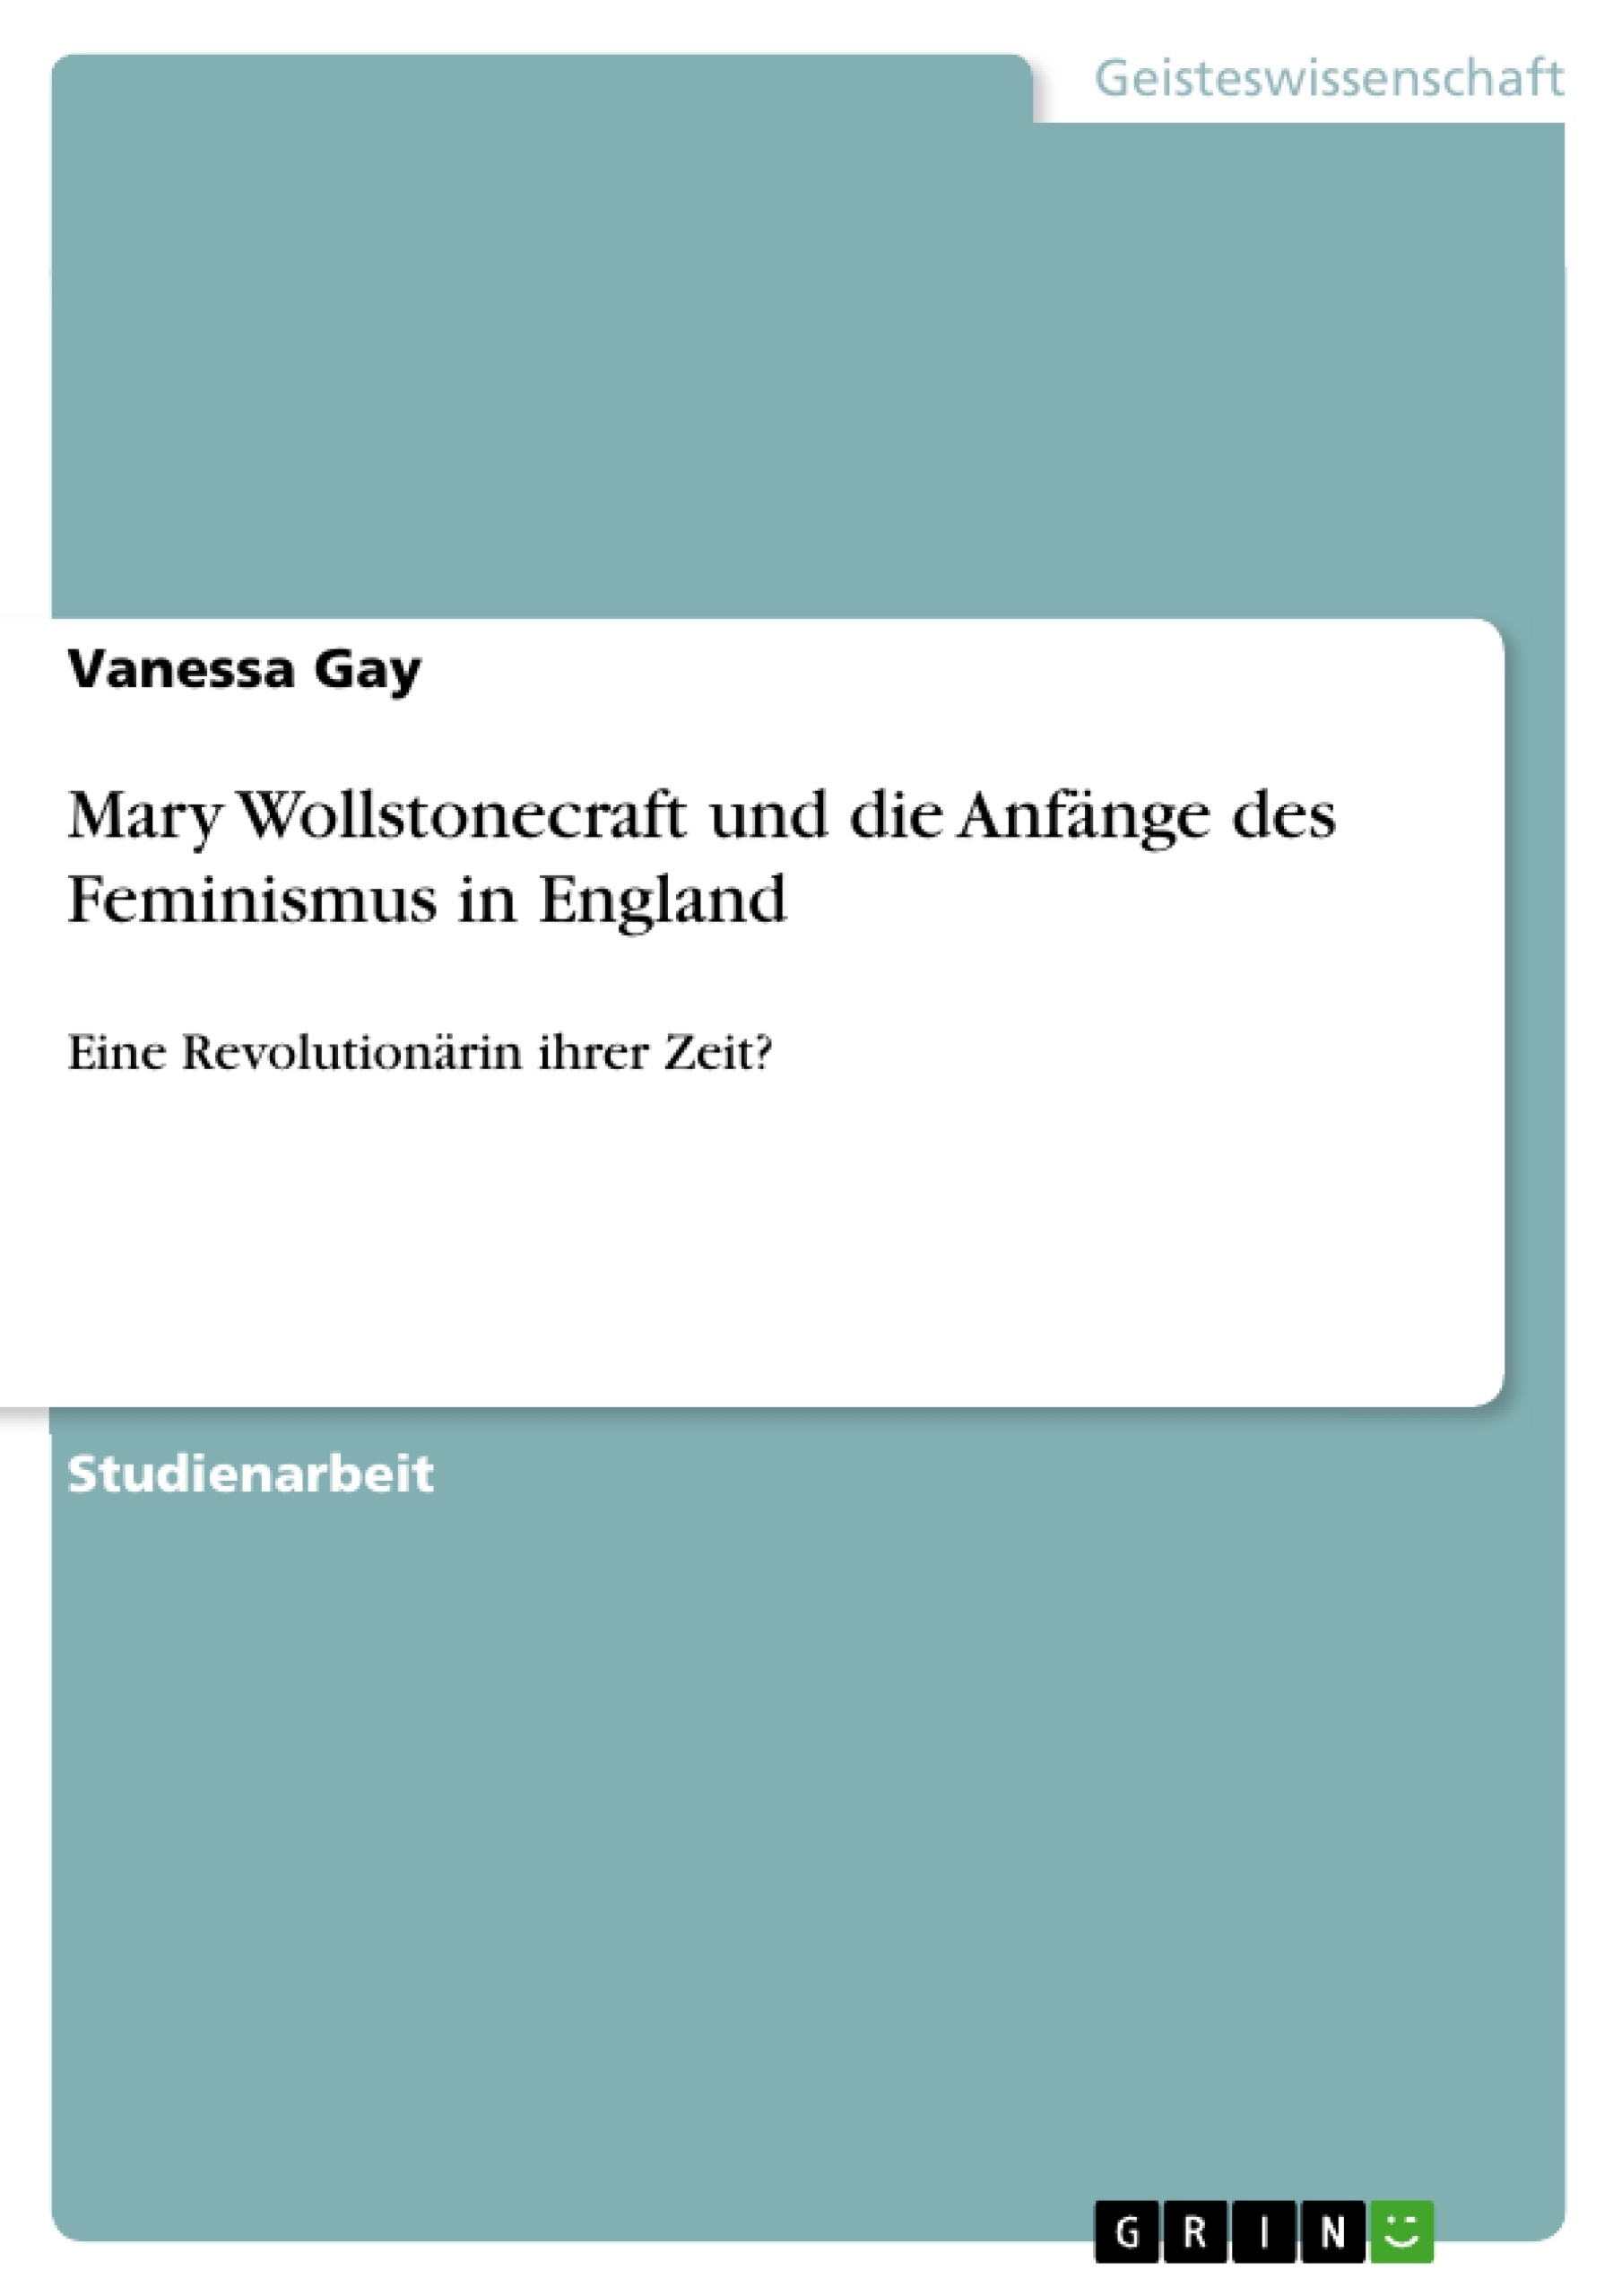 Titre: Mary Wollstonecraft und die Anfänge des Feminismus in England